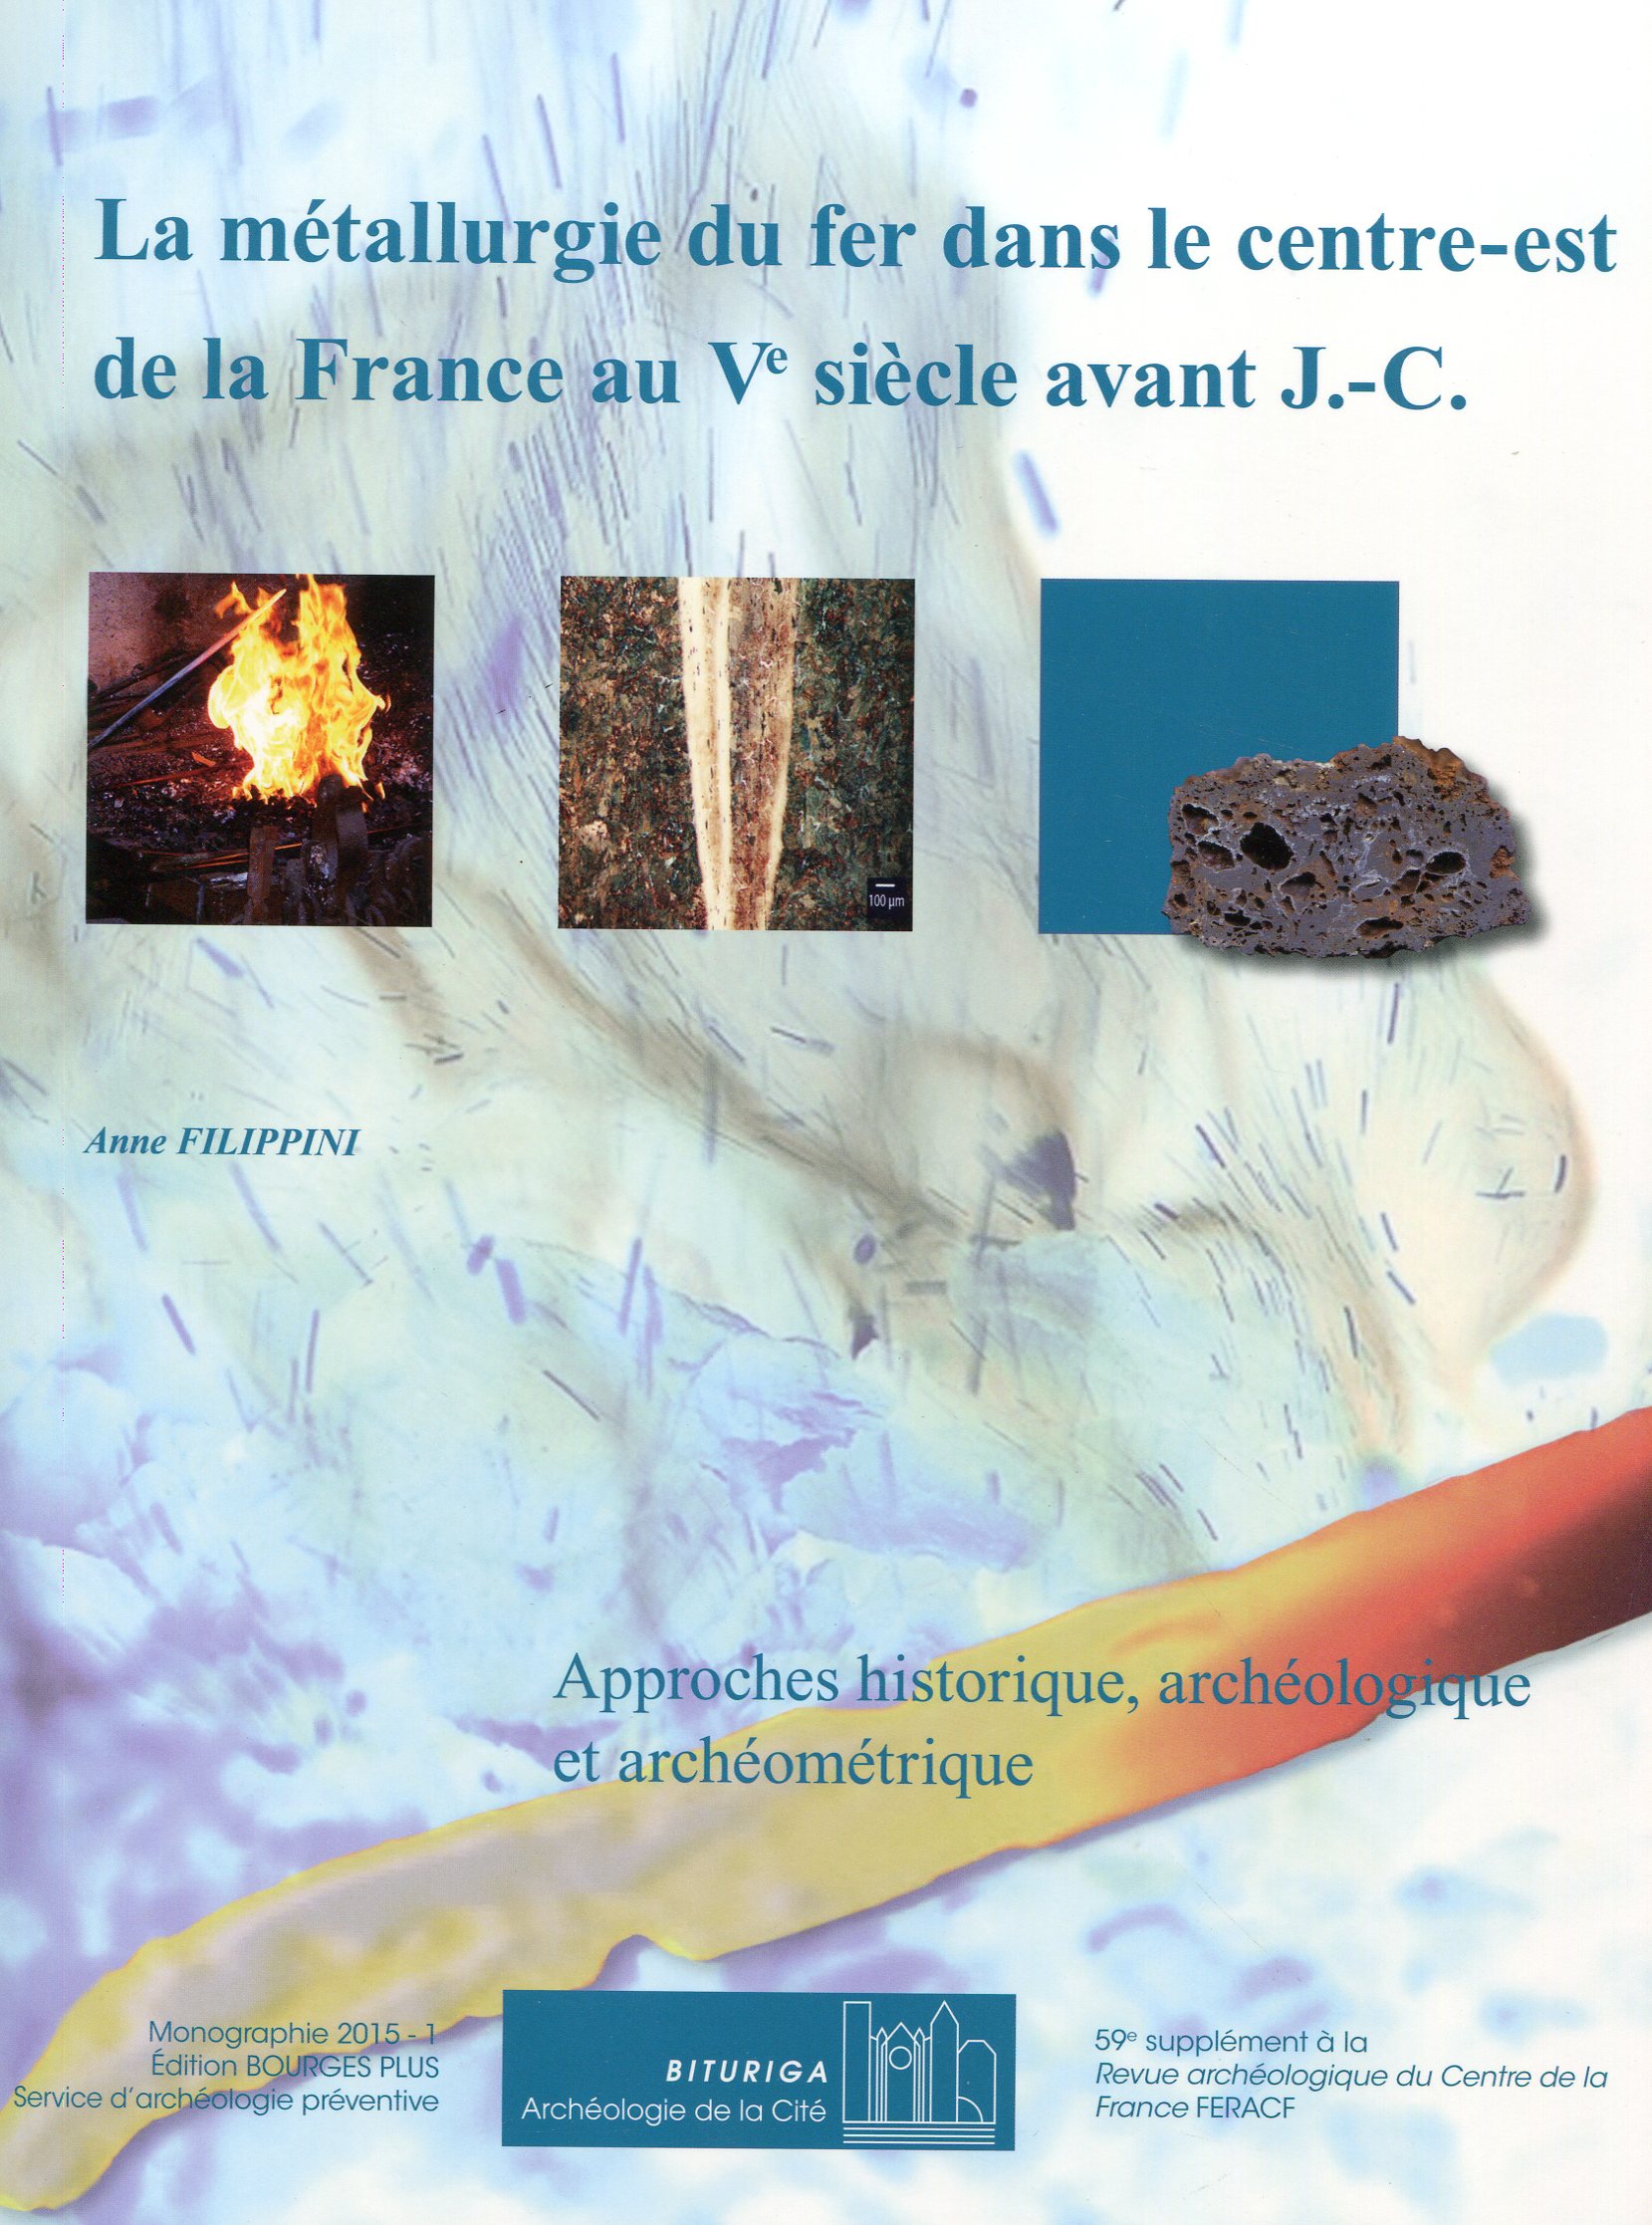 La métallurgie du fer dans le centre-est de la France au Ve siècle avant J.-C. Approches historique, archéologique et archéométrique, (suppl. RACF 59), 2015, 240 p.